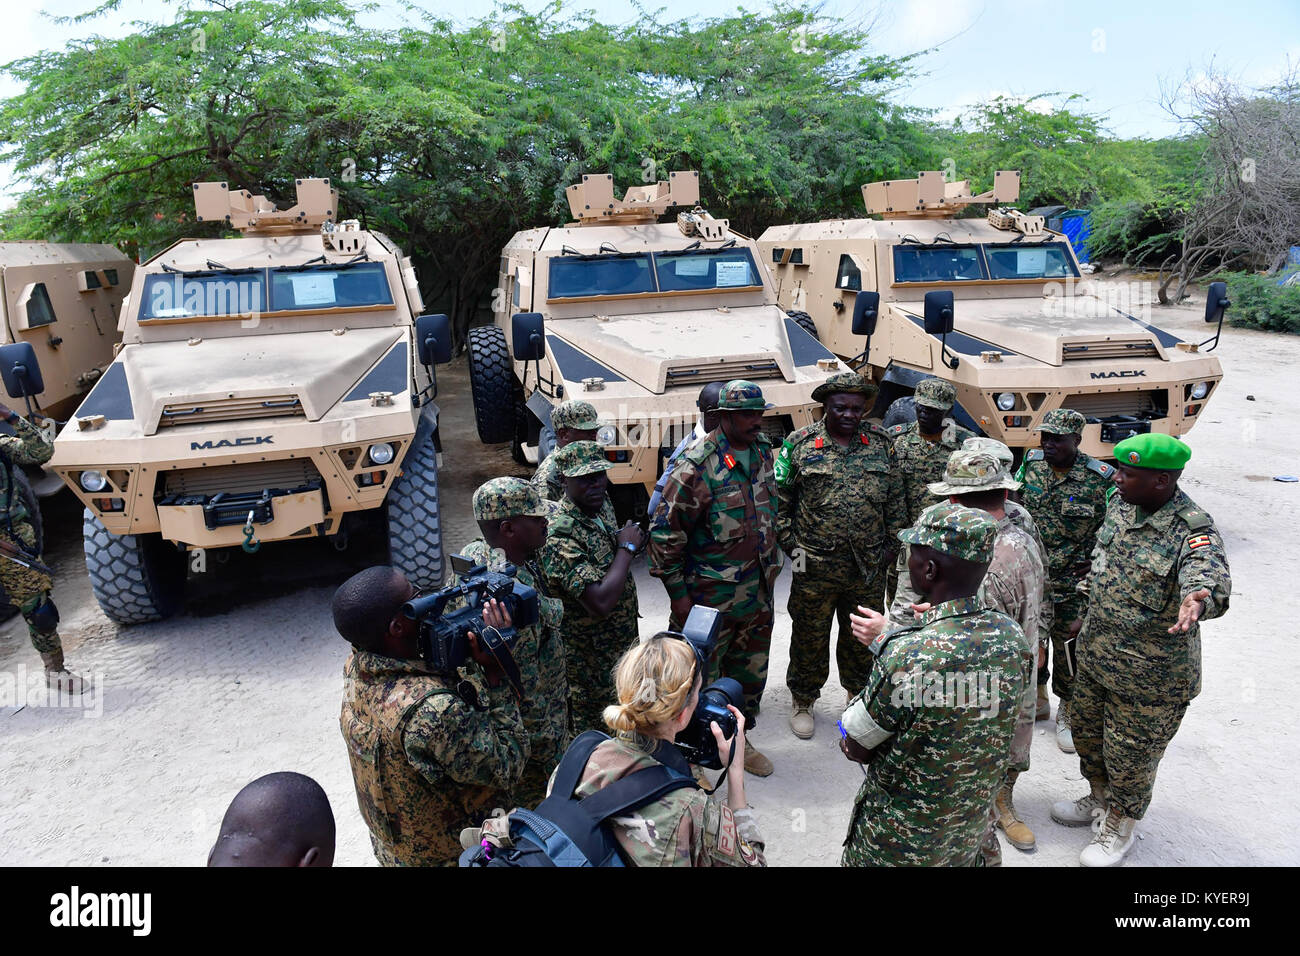 Le brig. Le général Miguel A. Castellanos, US Army Commandant général adjoint CJTF-HOA Somalie, parlant au commandant du contingent ougandais de l'AMISOM Brig. Muhanga général Kayanja après un don de véhicules de combat sur 25th/Sep/2017, à Mogadiscio, en Somalie. L'AMISOM Photo/Atulinda Allan Banque D'Images